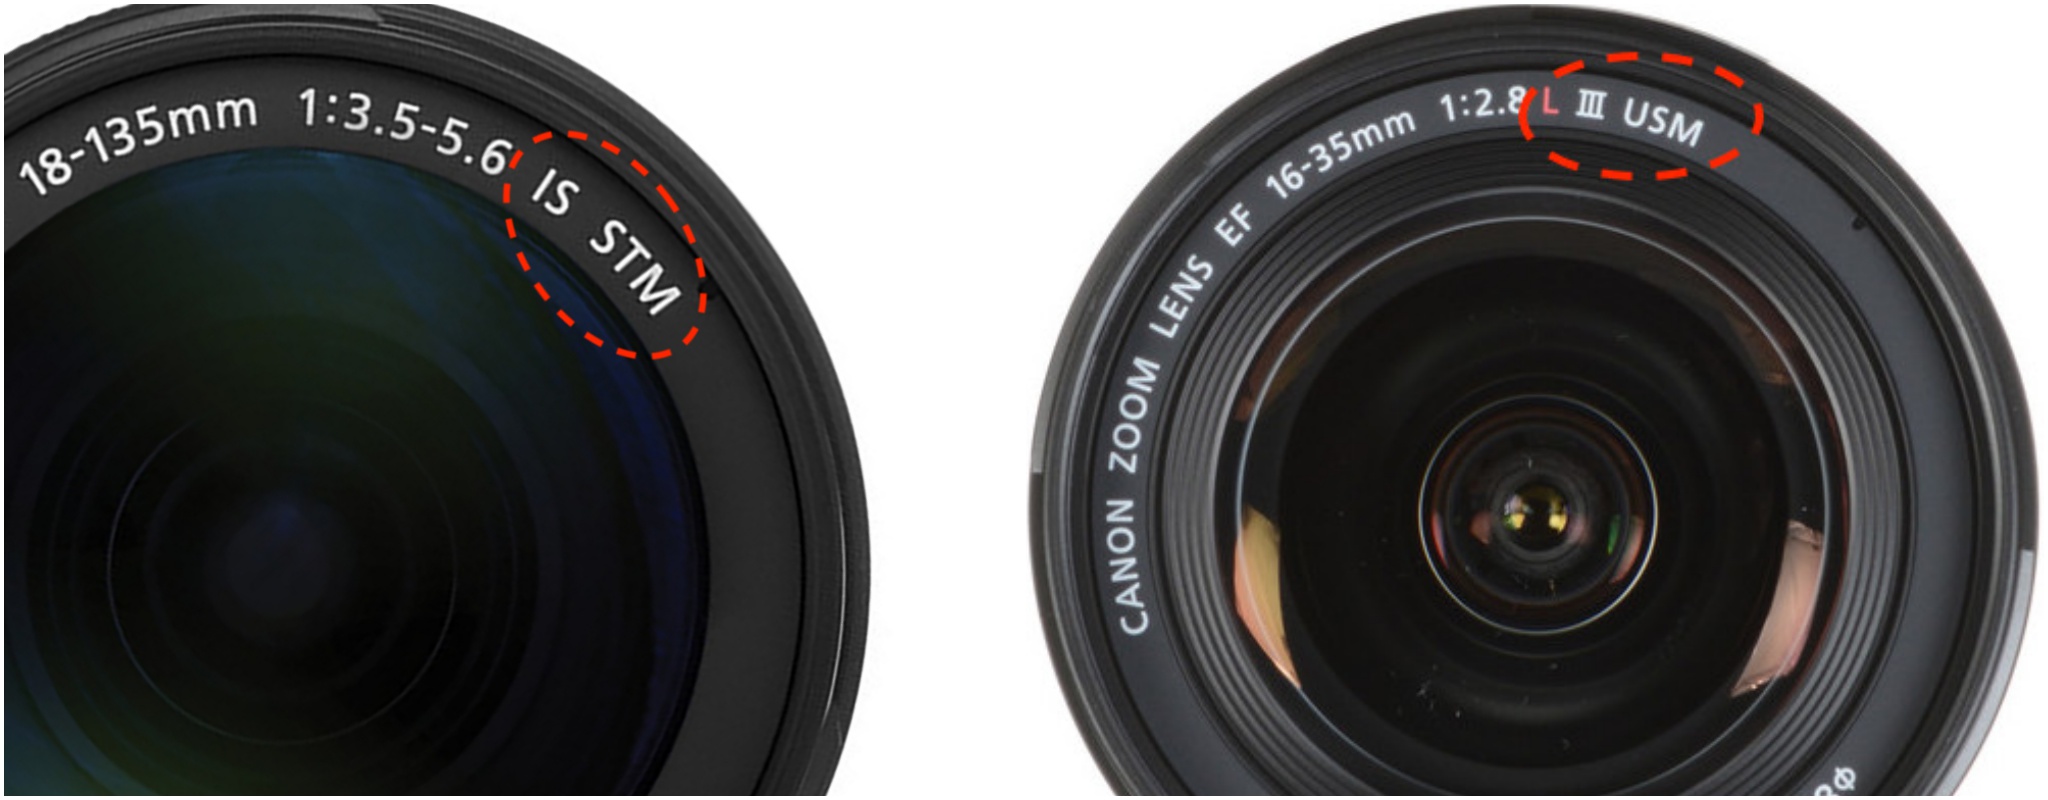 Đang tải Canon lens symbol - Camera.tinhte.vn .jpg…